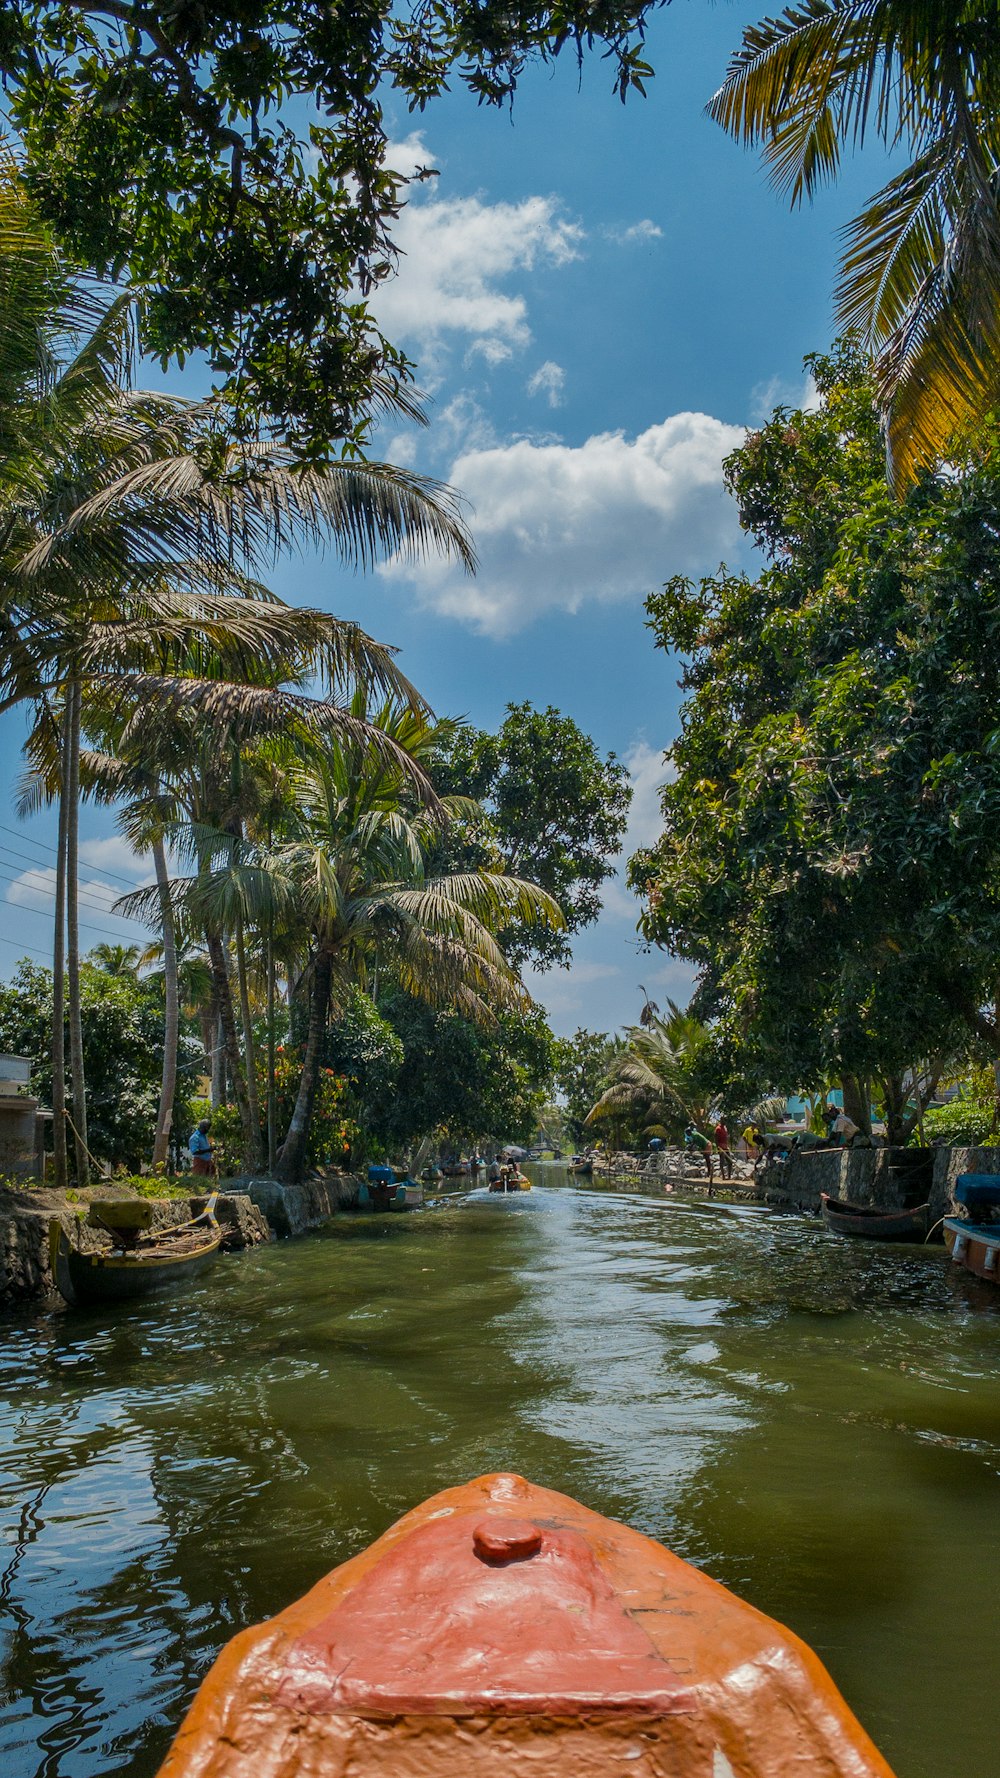 Un bateau descendant une rivière entourée de palmiers